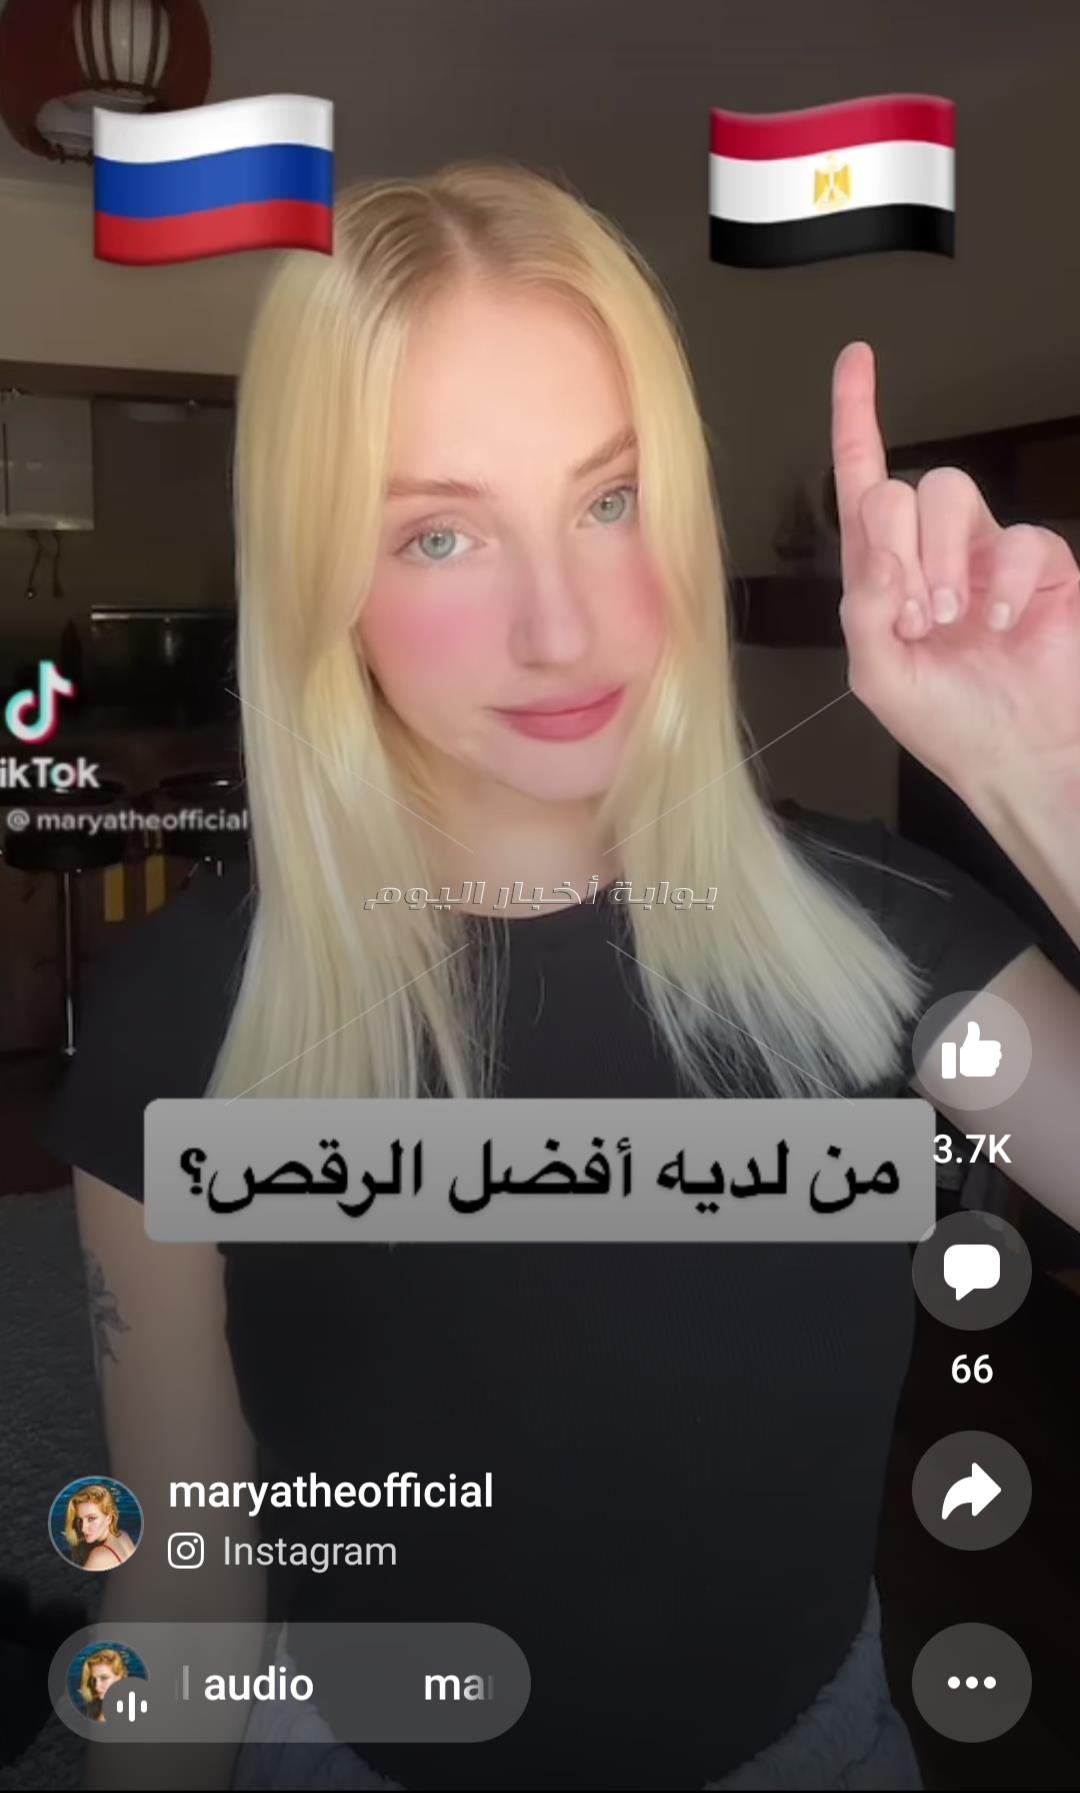  فتاة روسية تروج لام الدنيا  عبر مواقع التواصل الاجتماعي: مصر لديها افضل طعام 